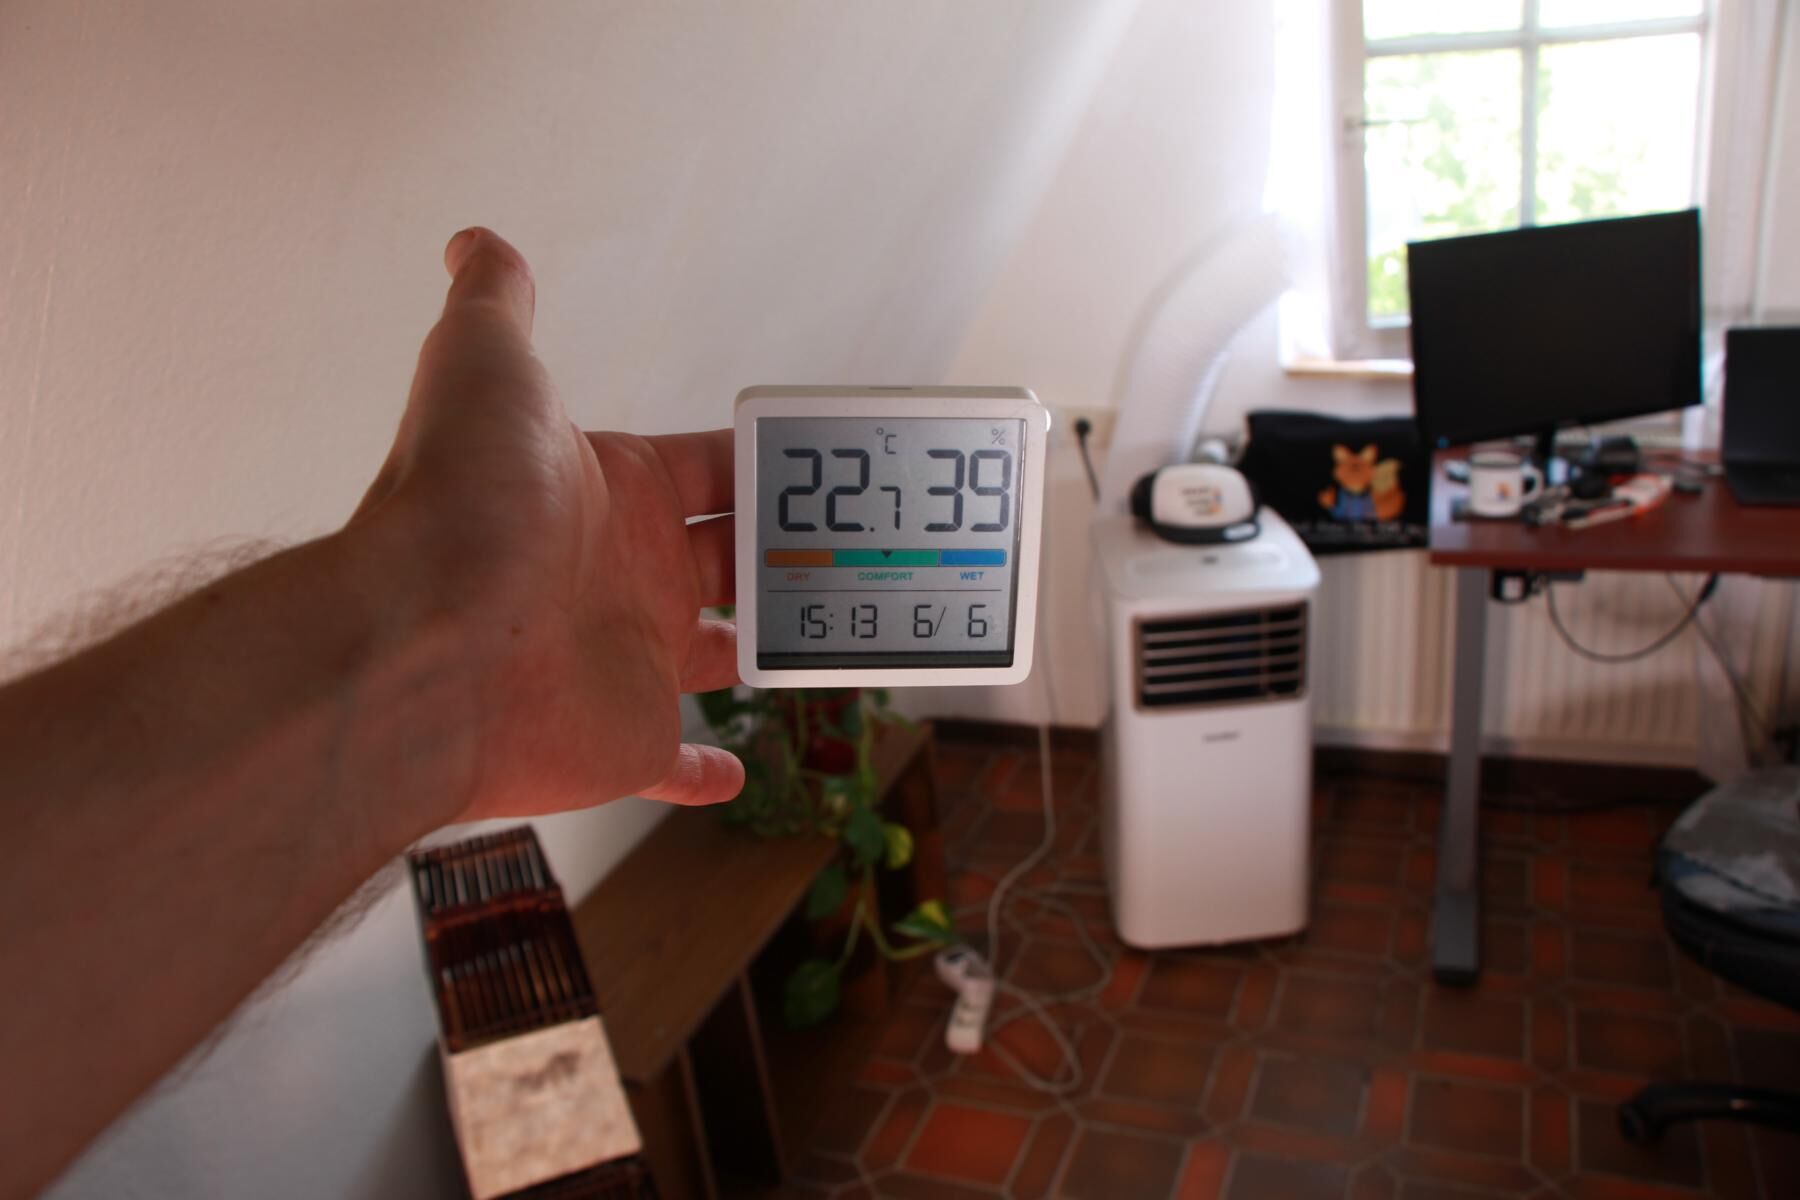 Am Ende des Kühltests zeigt das Thermostat 22,7 Grad Celsius an.